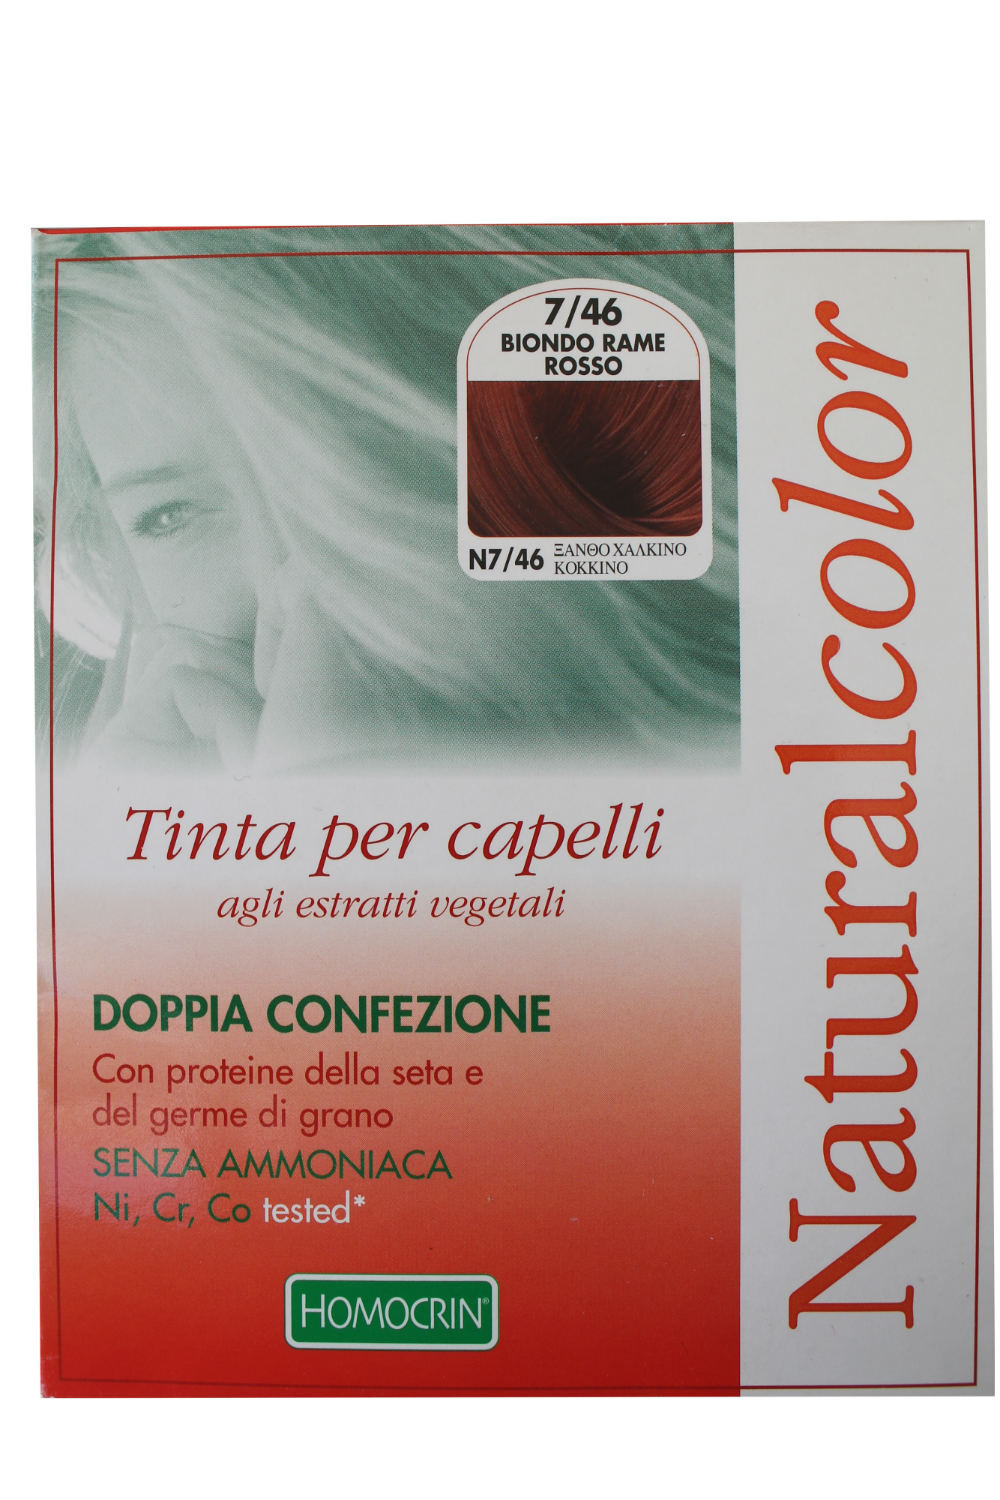 Homocrin Naturalcolor Tinta Biondo Rame Rosso 746 2 Applicazioni